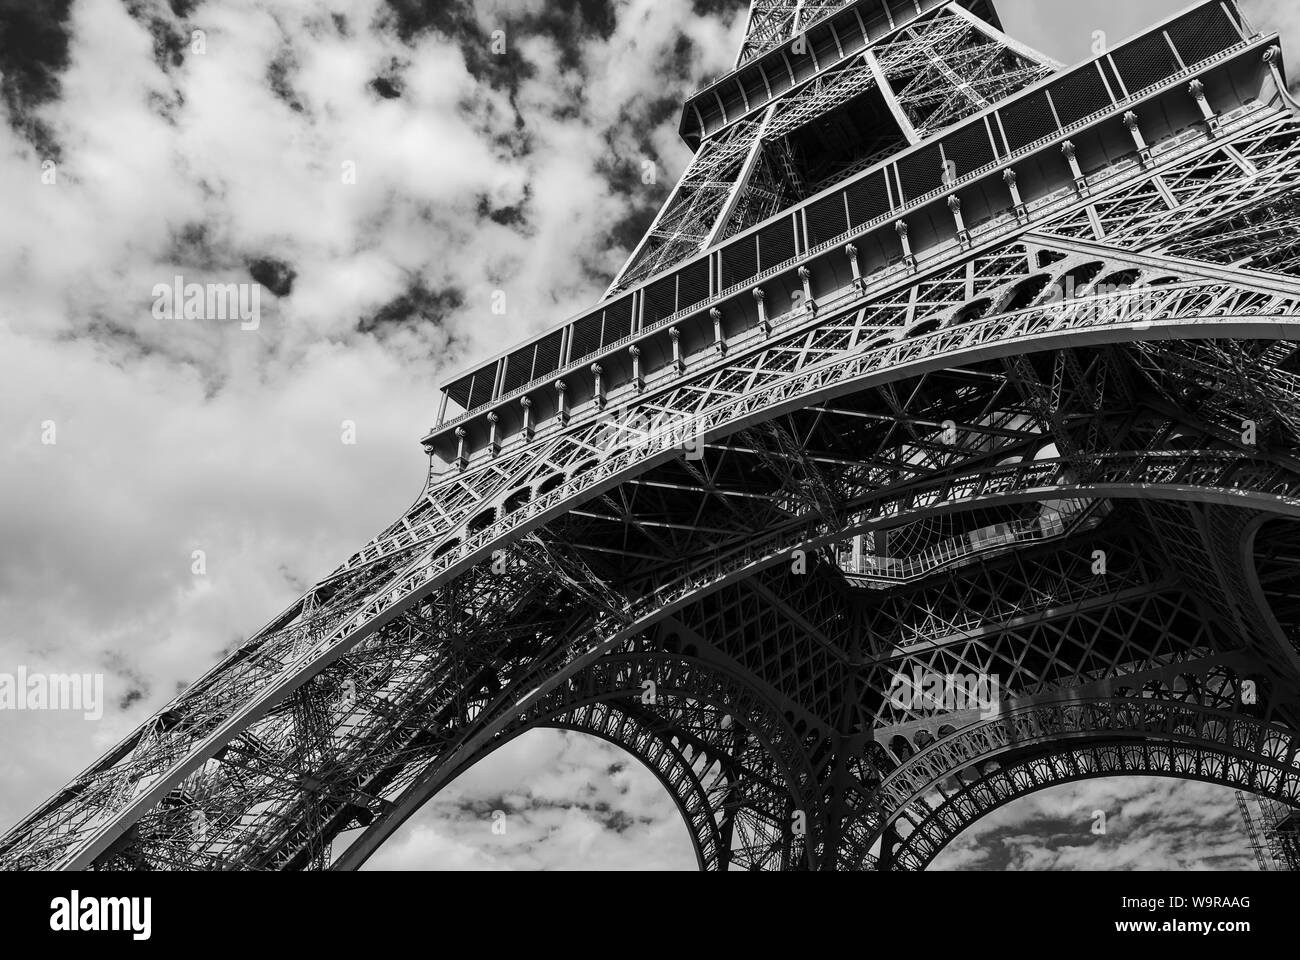 Un bianco e nero immagine orizzontale della base della Torre Eiffel a Parigi Francia, con una bassa posizione di scatto alla ricerca fino a creare il senso di scal Foto Stock